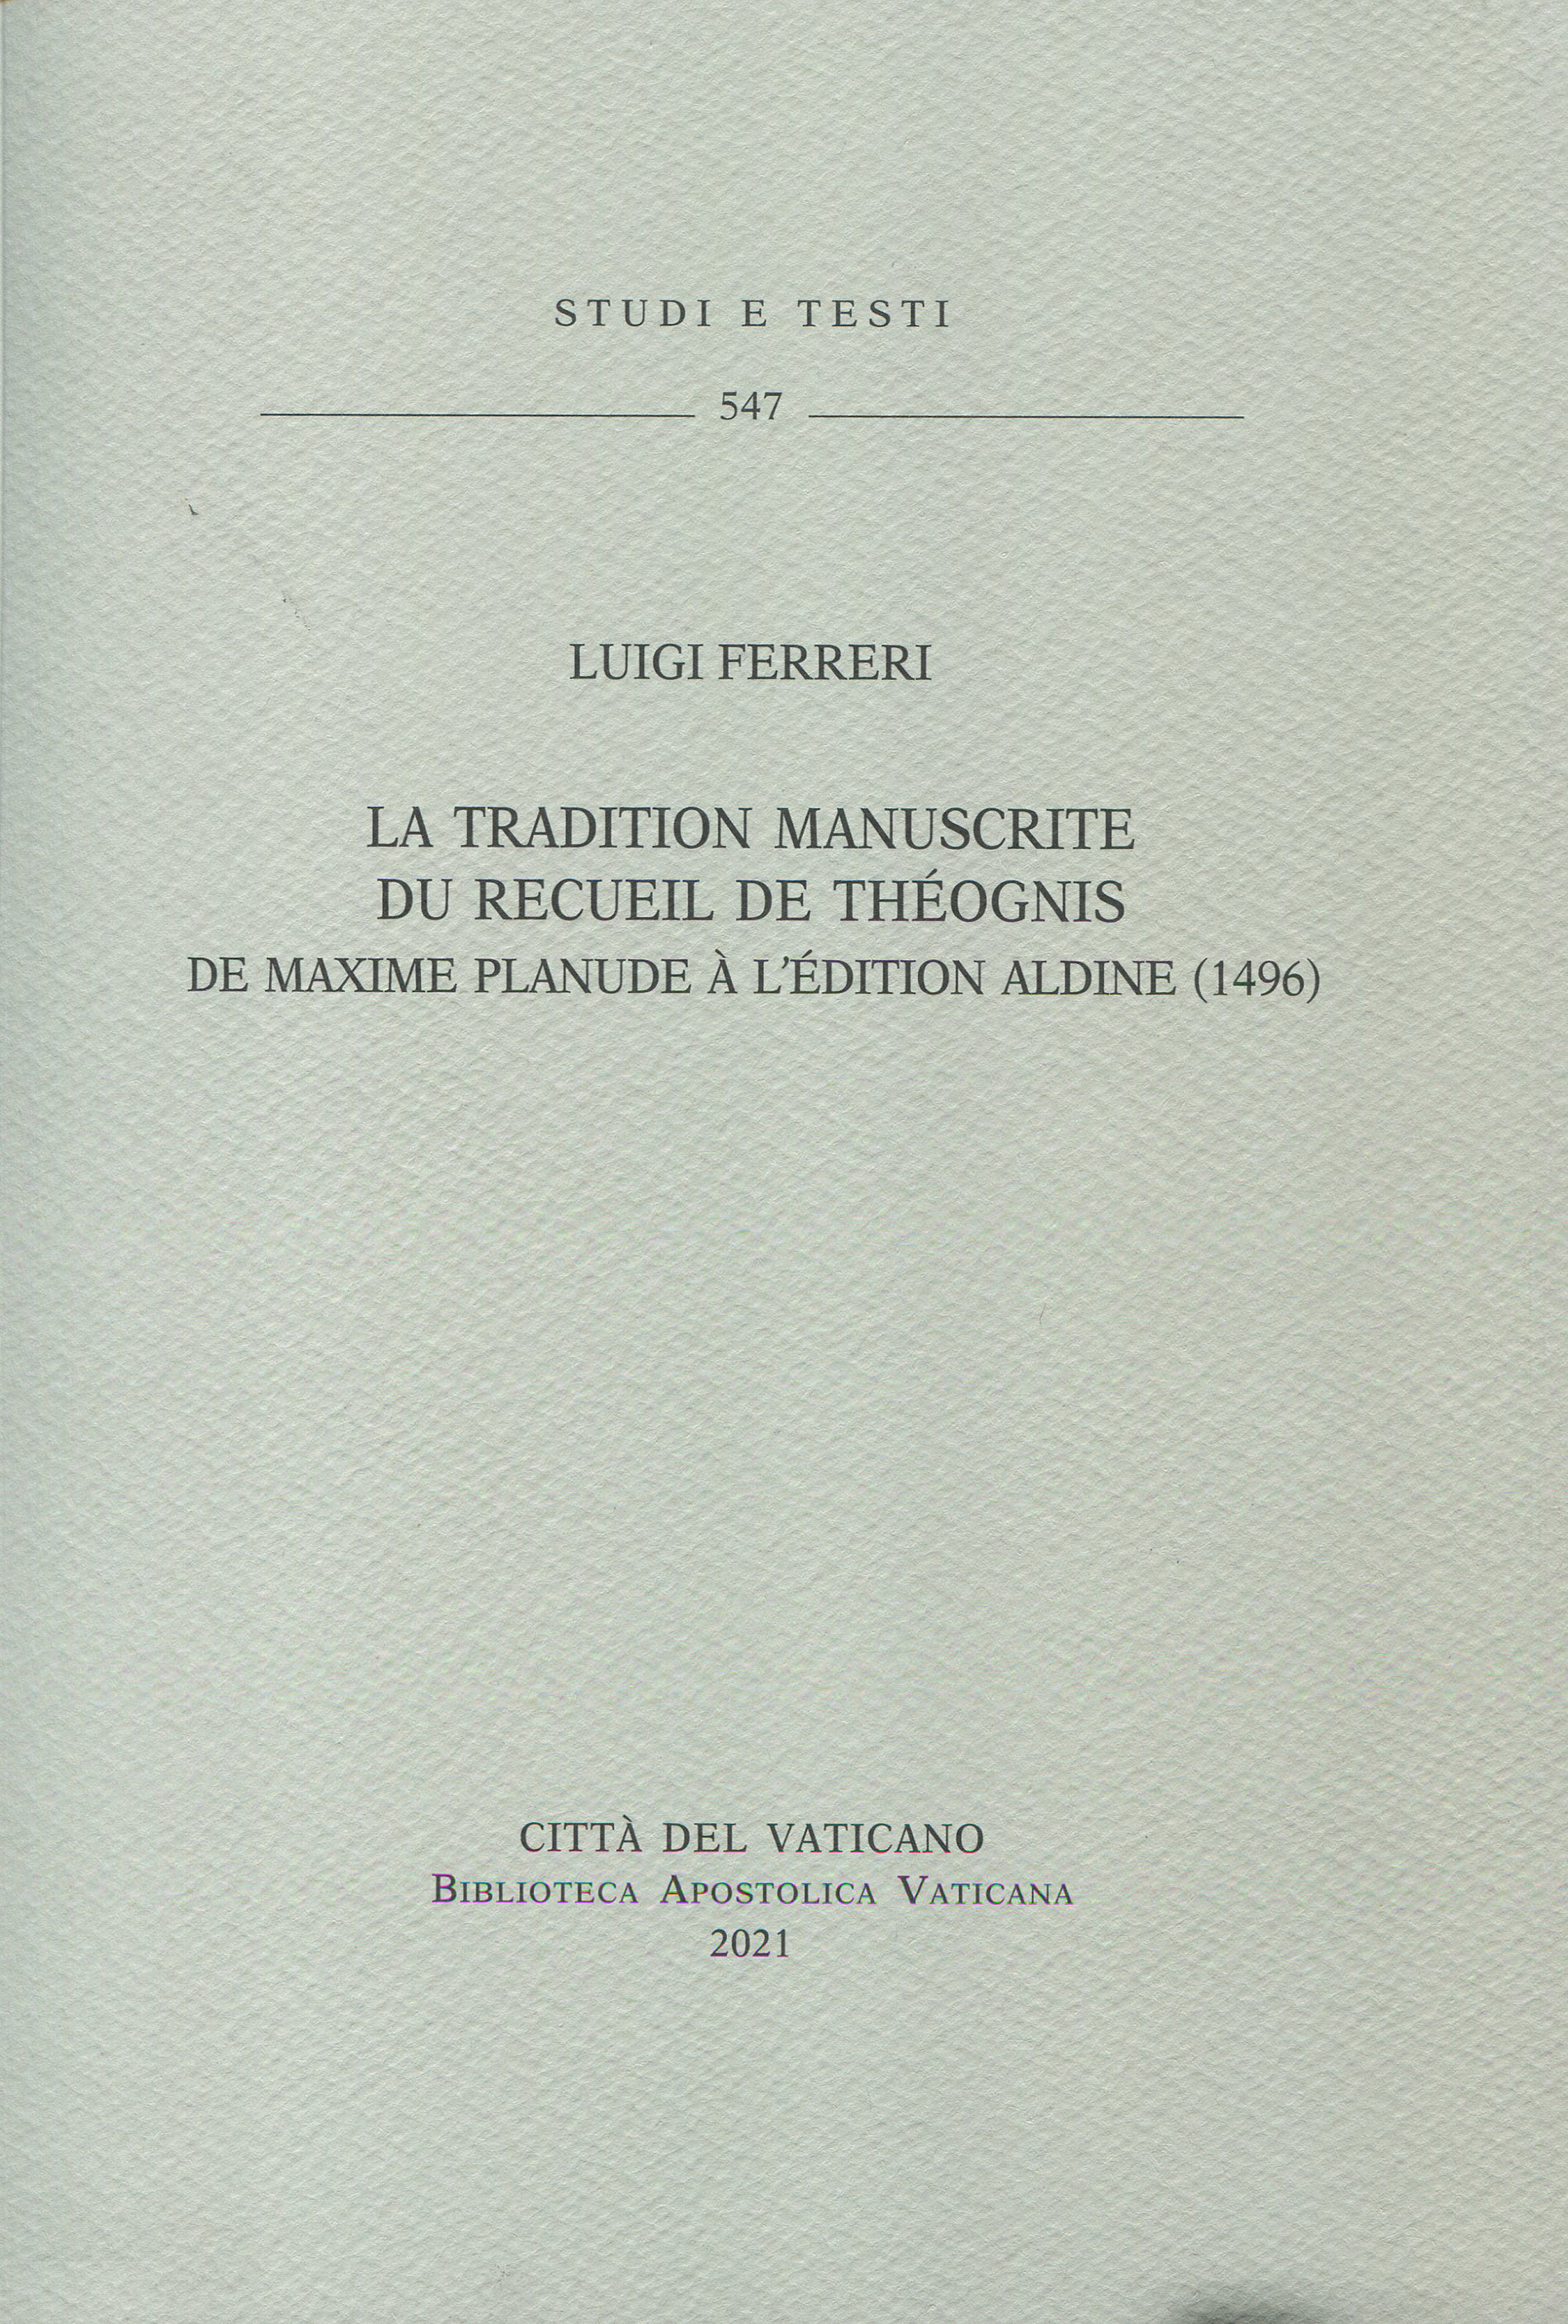 La tradition manuscrite du recueil de Théognis de maxime planude à l'édition Aldine (1496)